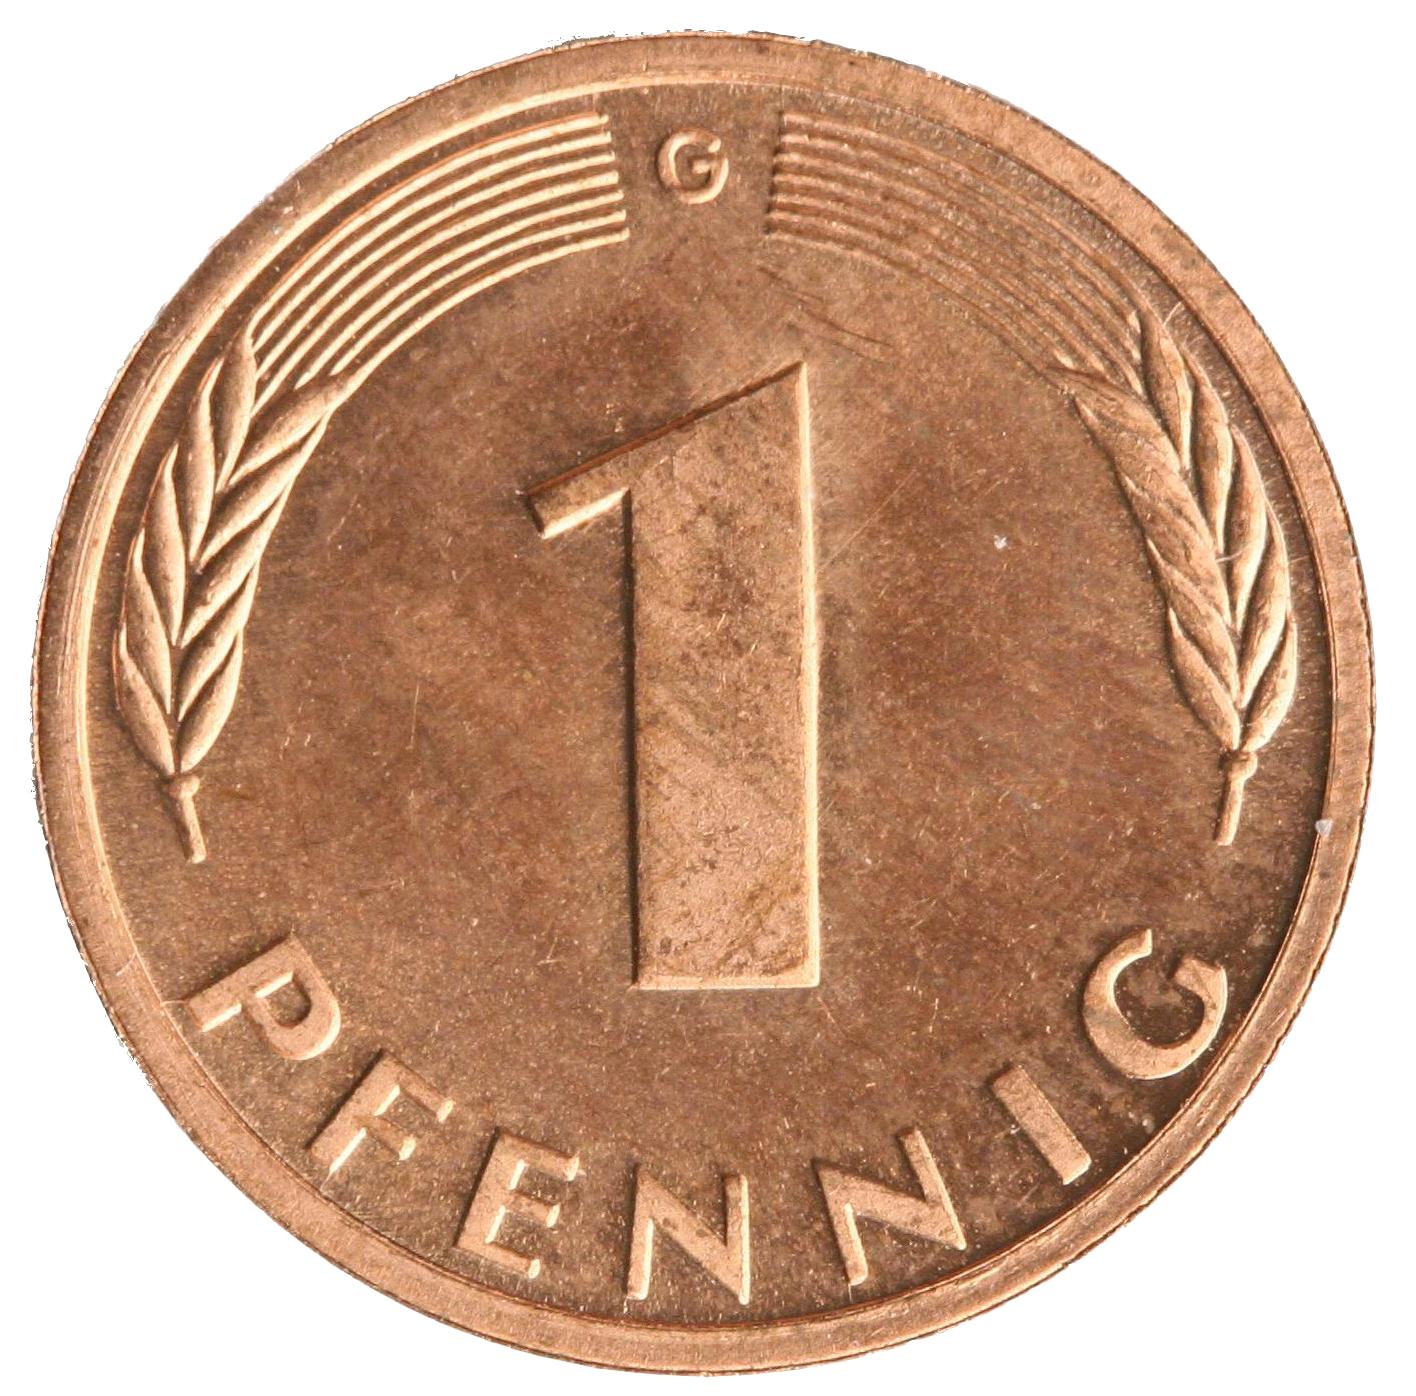 1-Pfennig coin - obverse